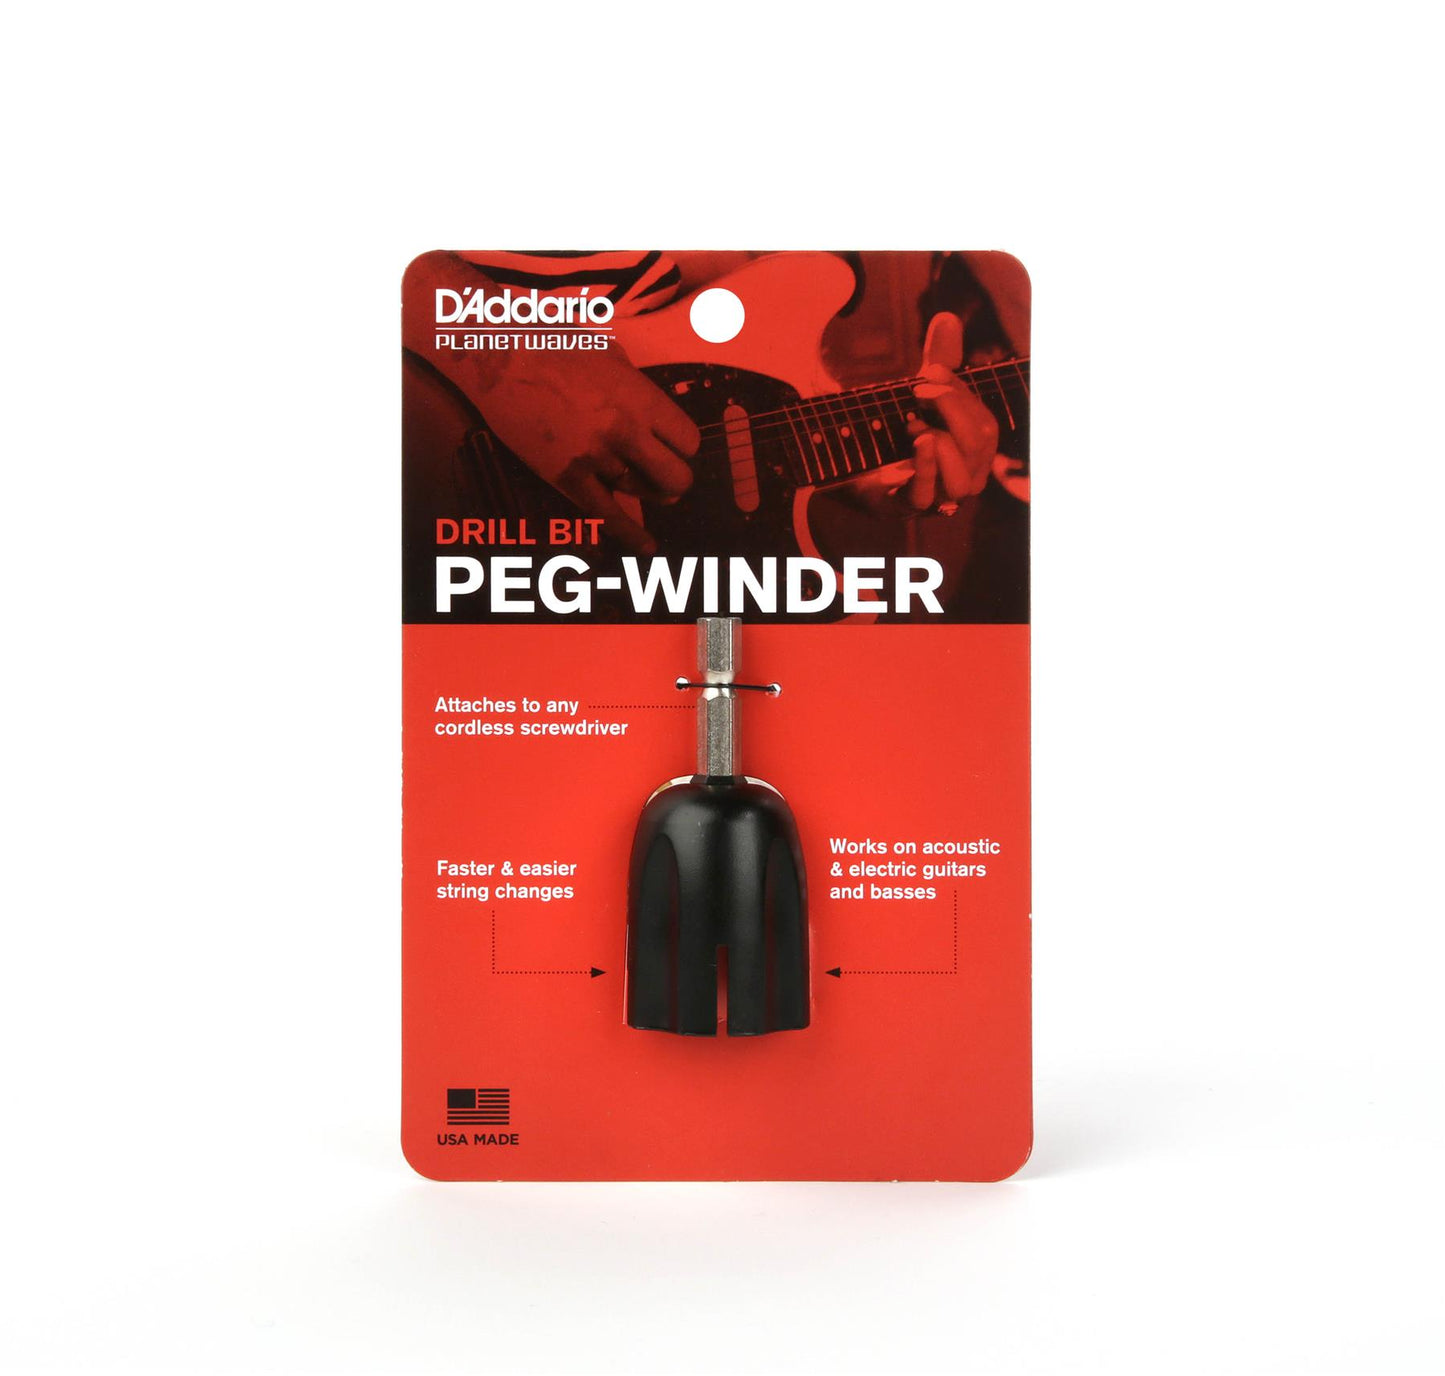 Daddario Drill Bit Tuning Peg Winder